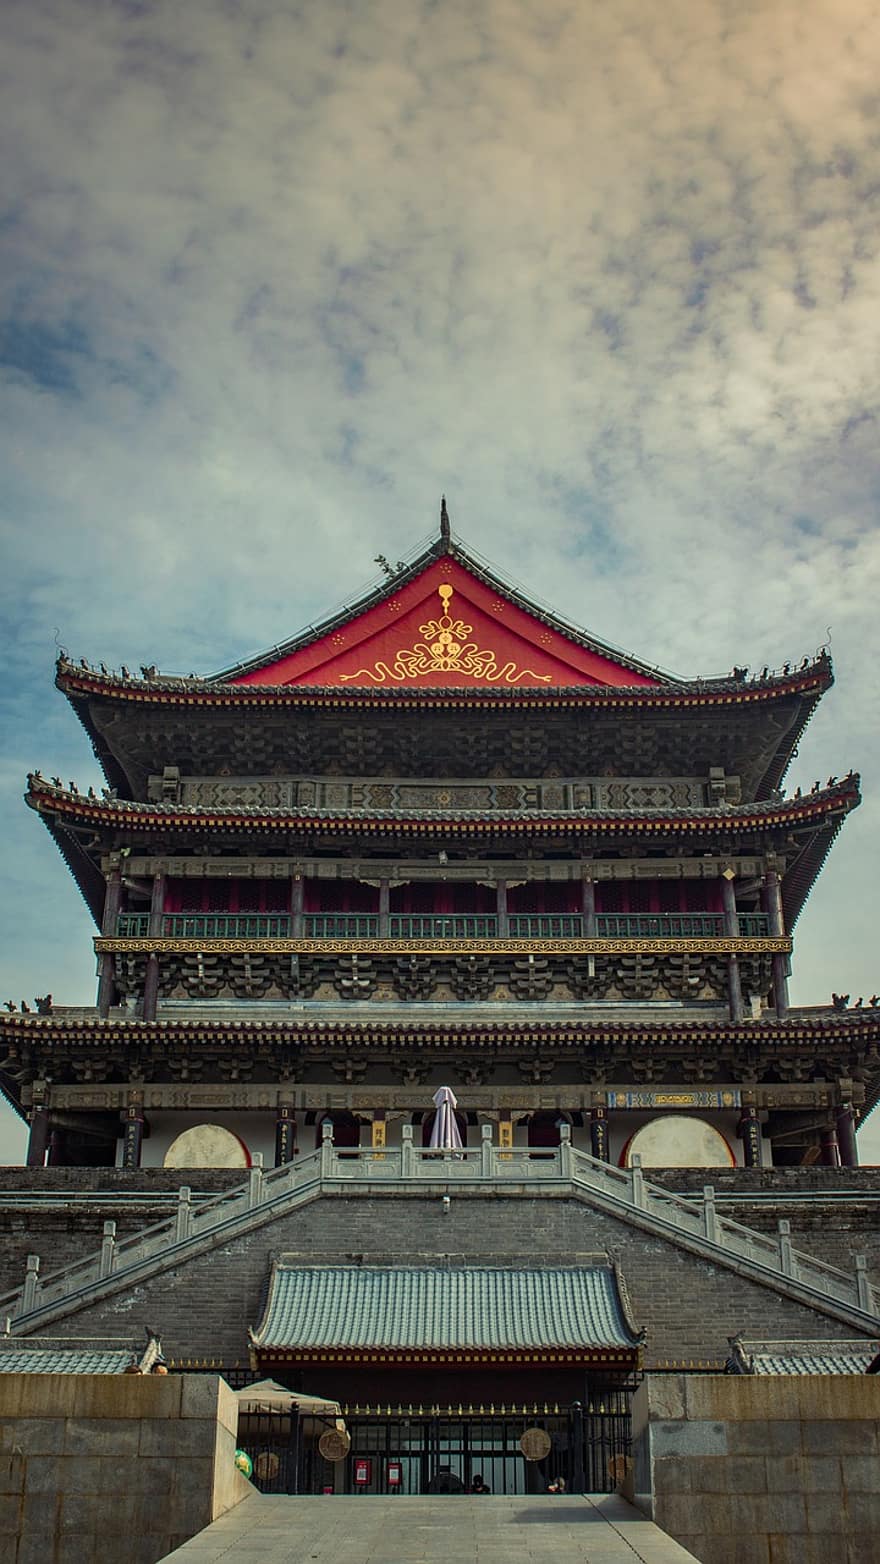 trommeltoren, Xian, China, mijlpaal, historisch, gebouw, architectuur, facade, Ingang, toren, stad